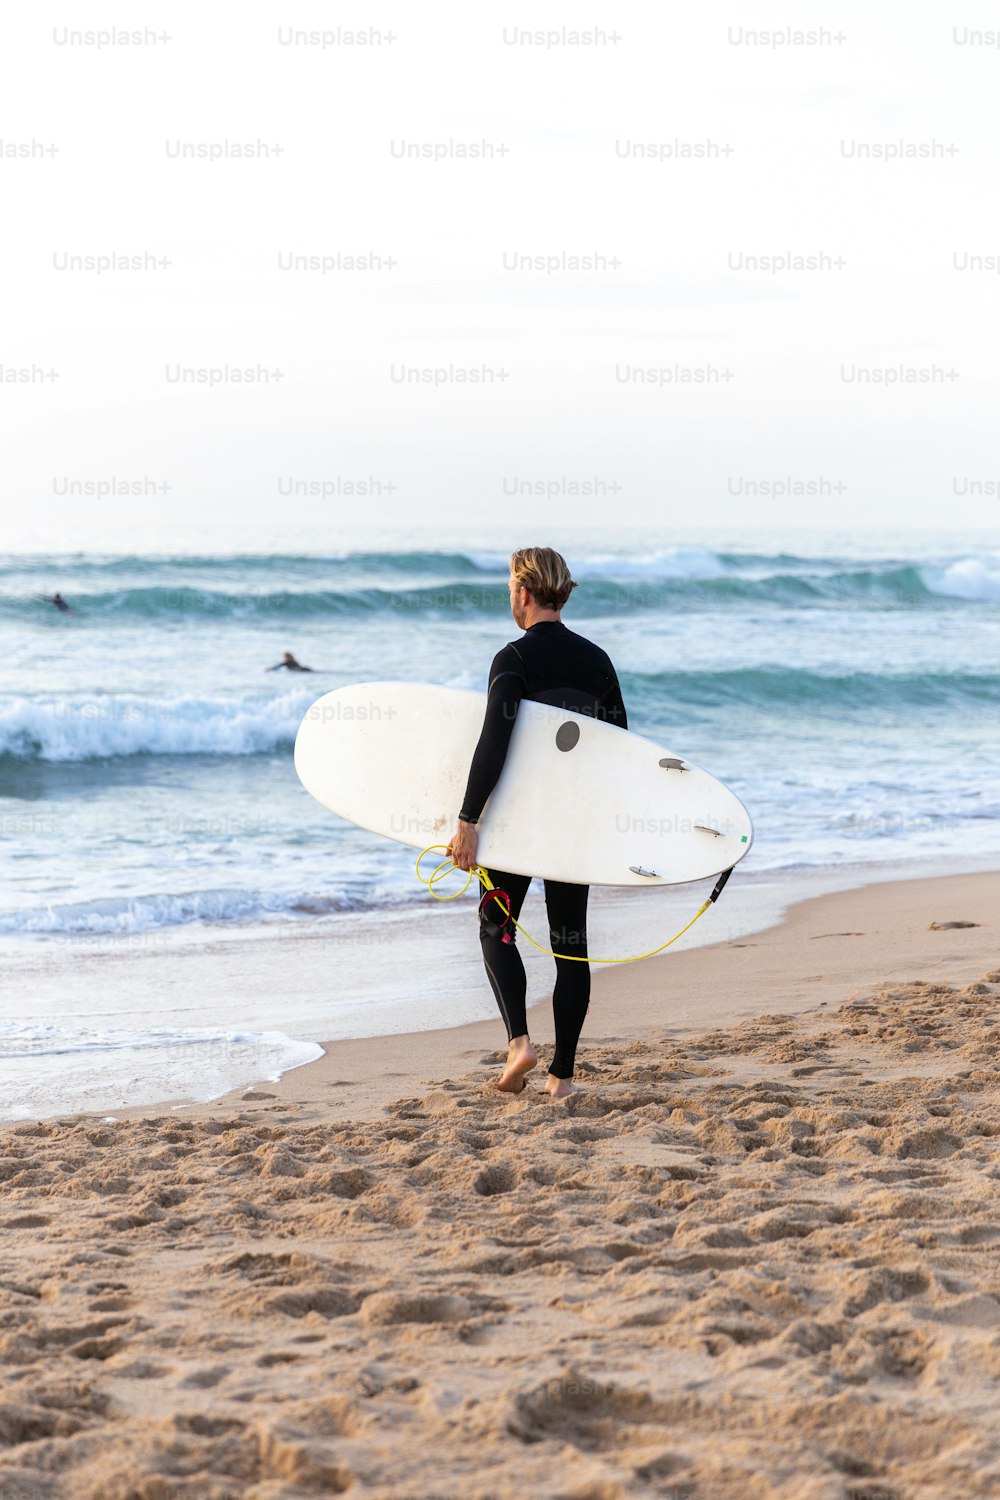 해변에서 서핑보드를 들고 있는 잠수복을 입은 남자